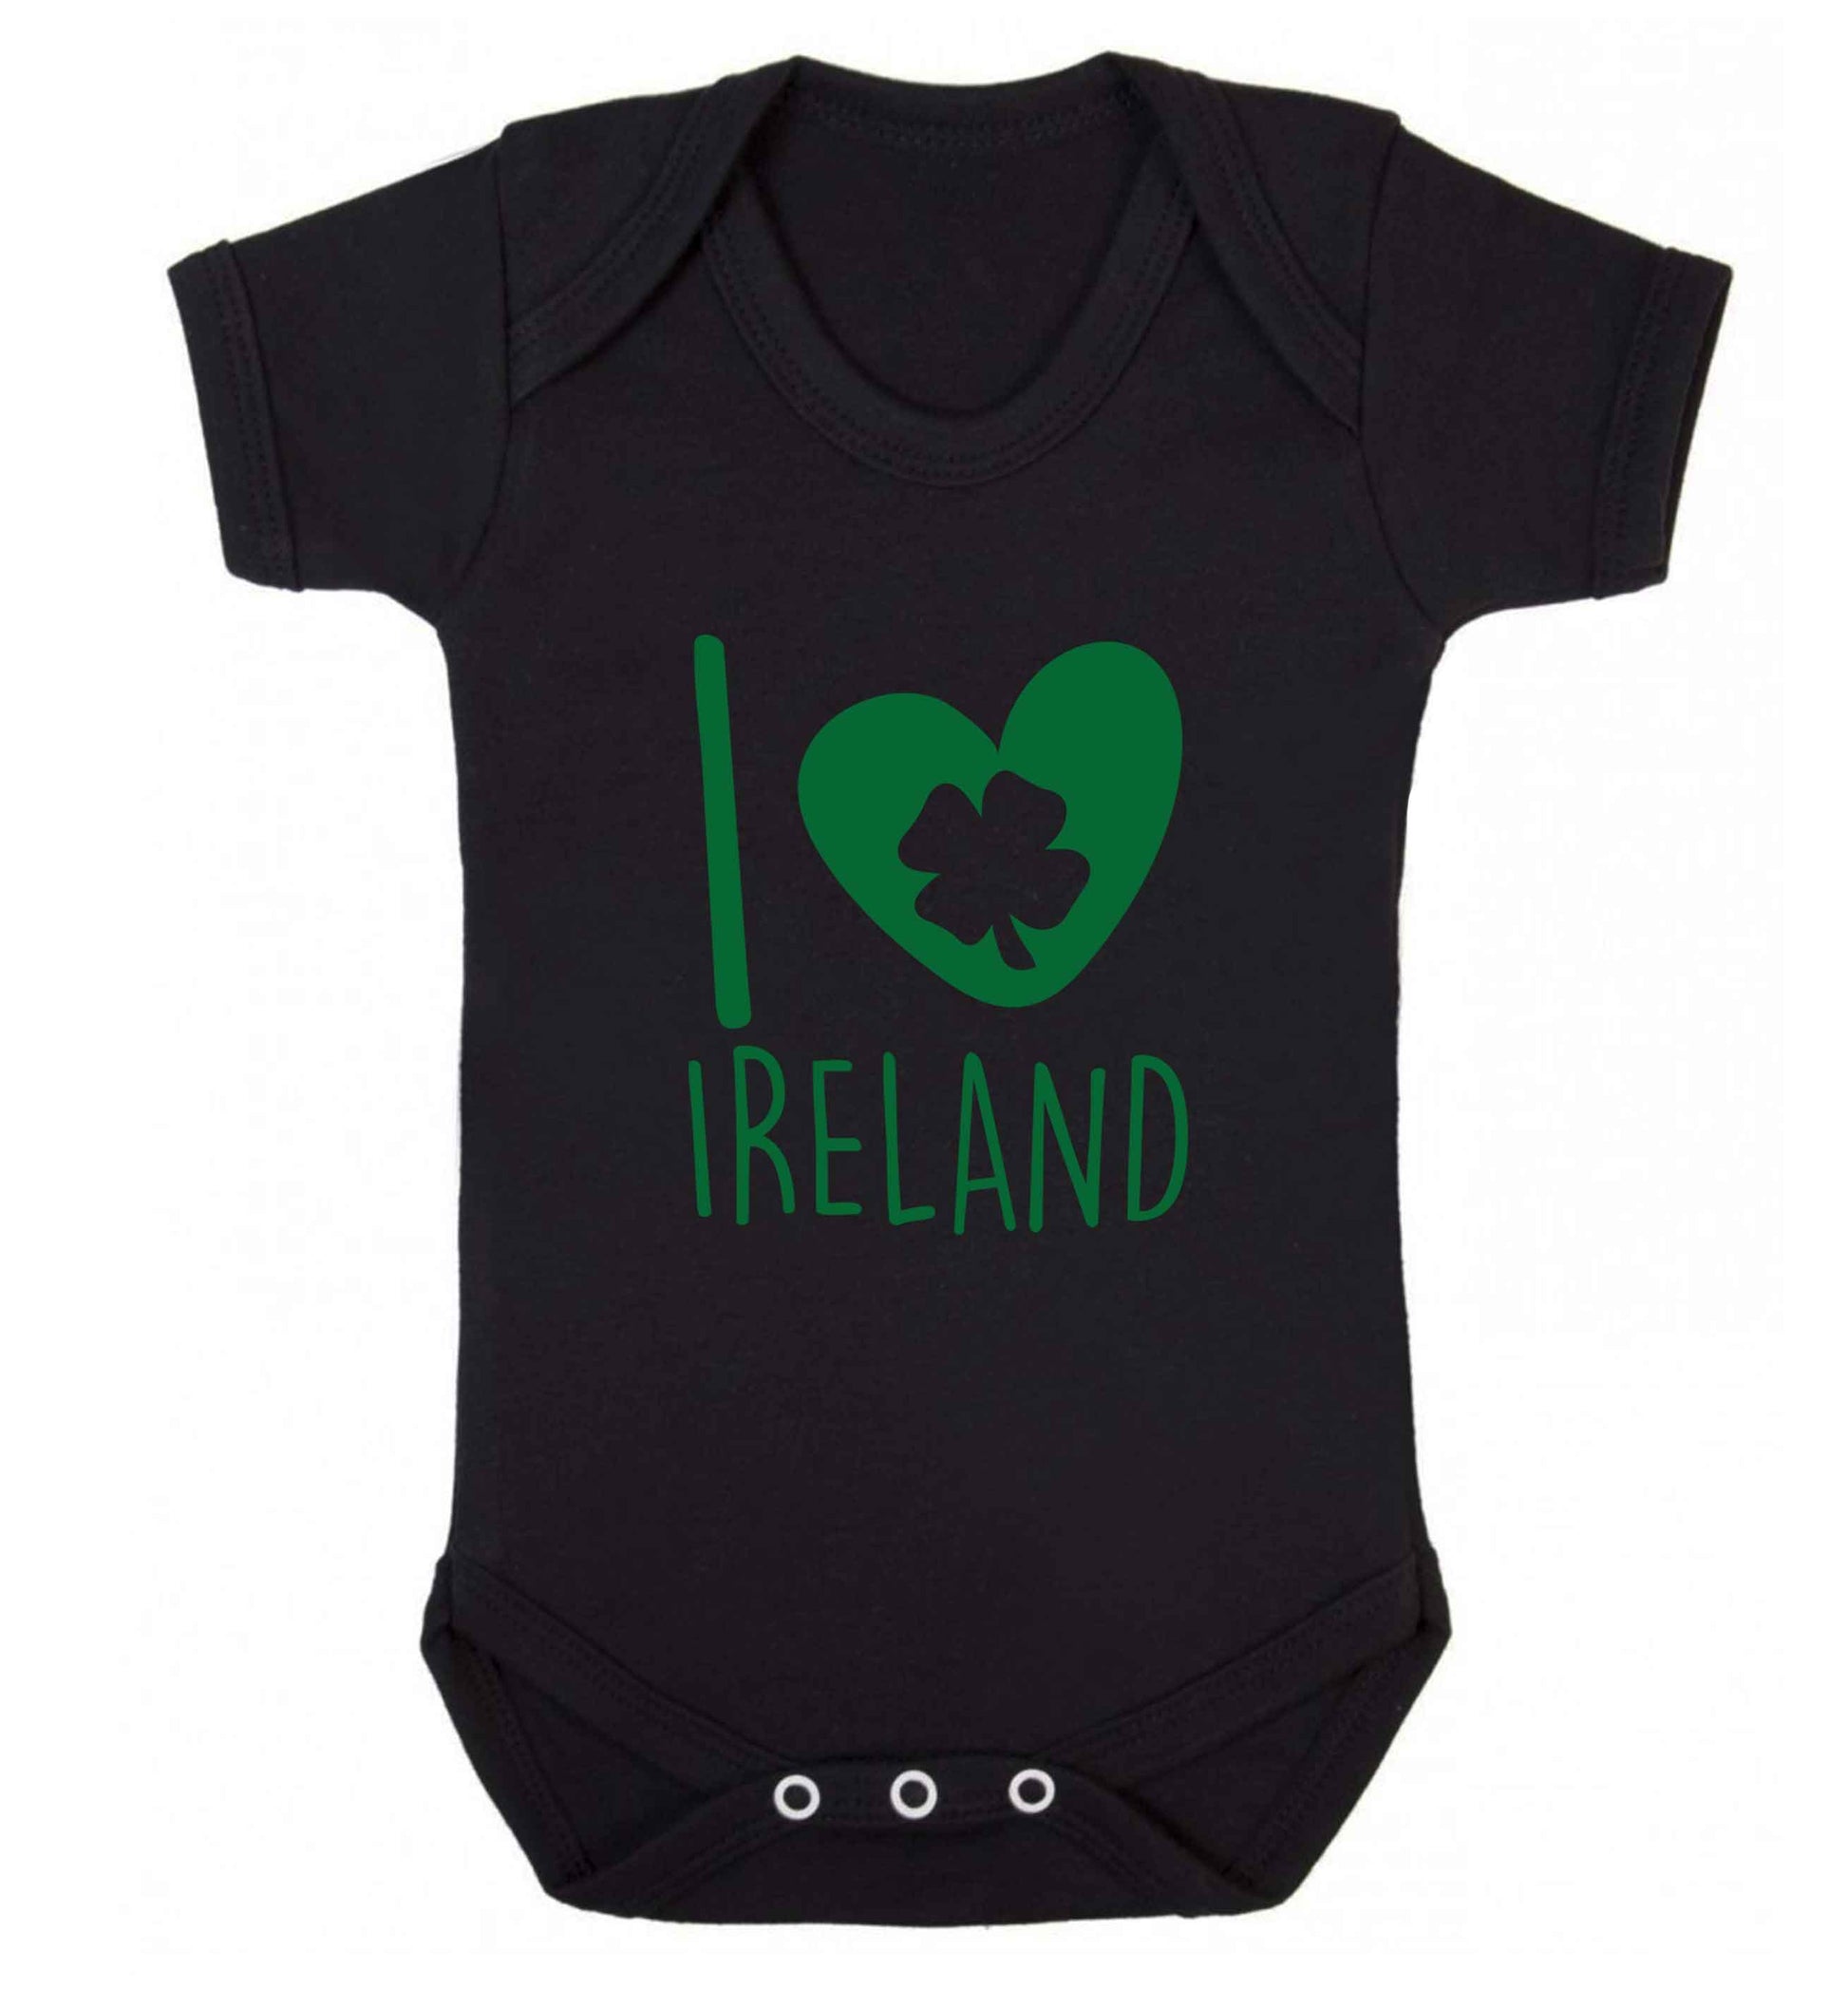 I love Ireland baby vest black 18-24 months